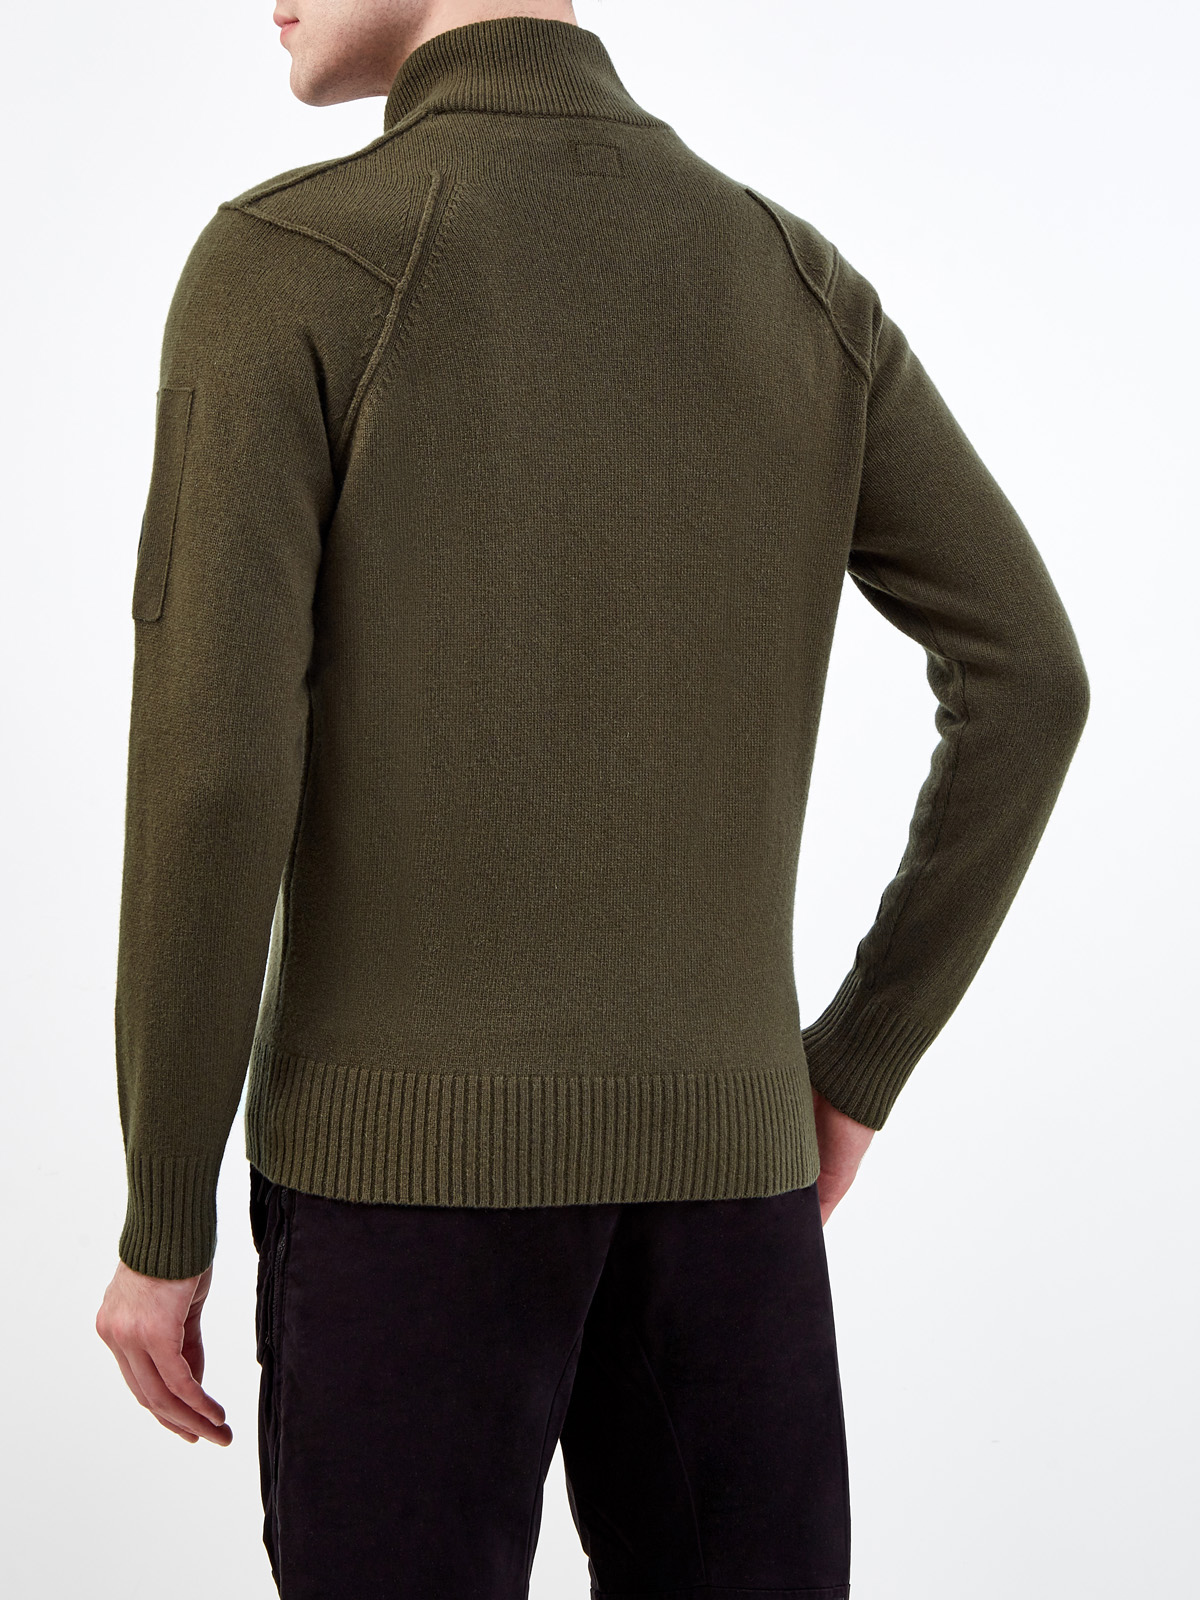 Шерстяной свитер с фактурными швами и застежкой на молнию C.P.COMPANY, цвет зеленый, размер L;XL;2XL;M - фото 4